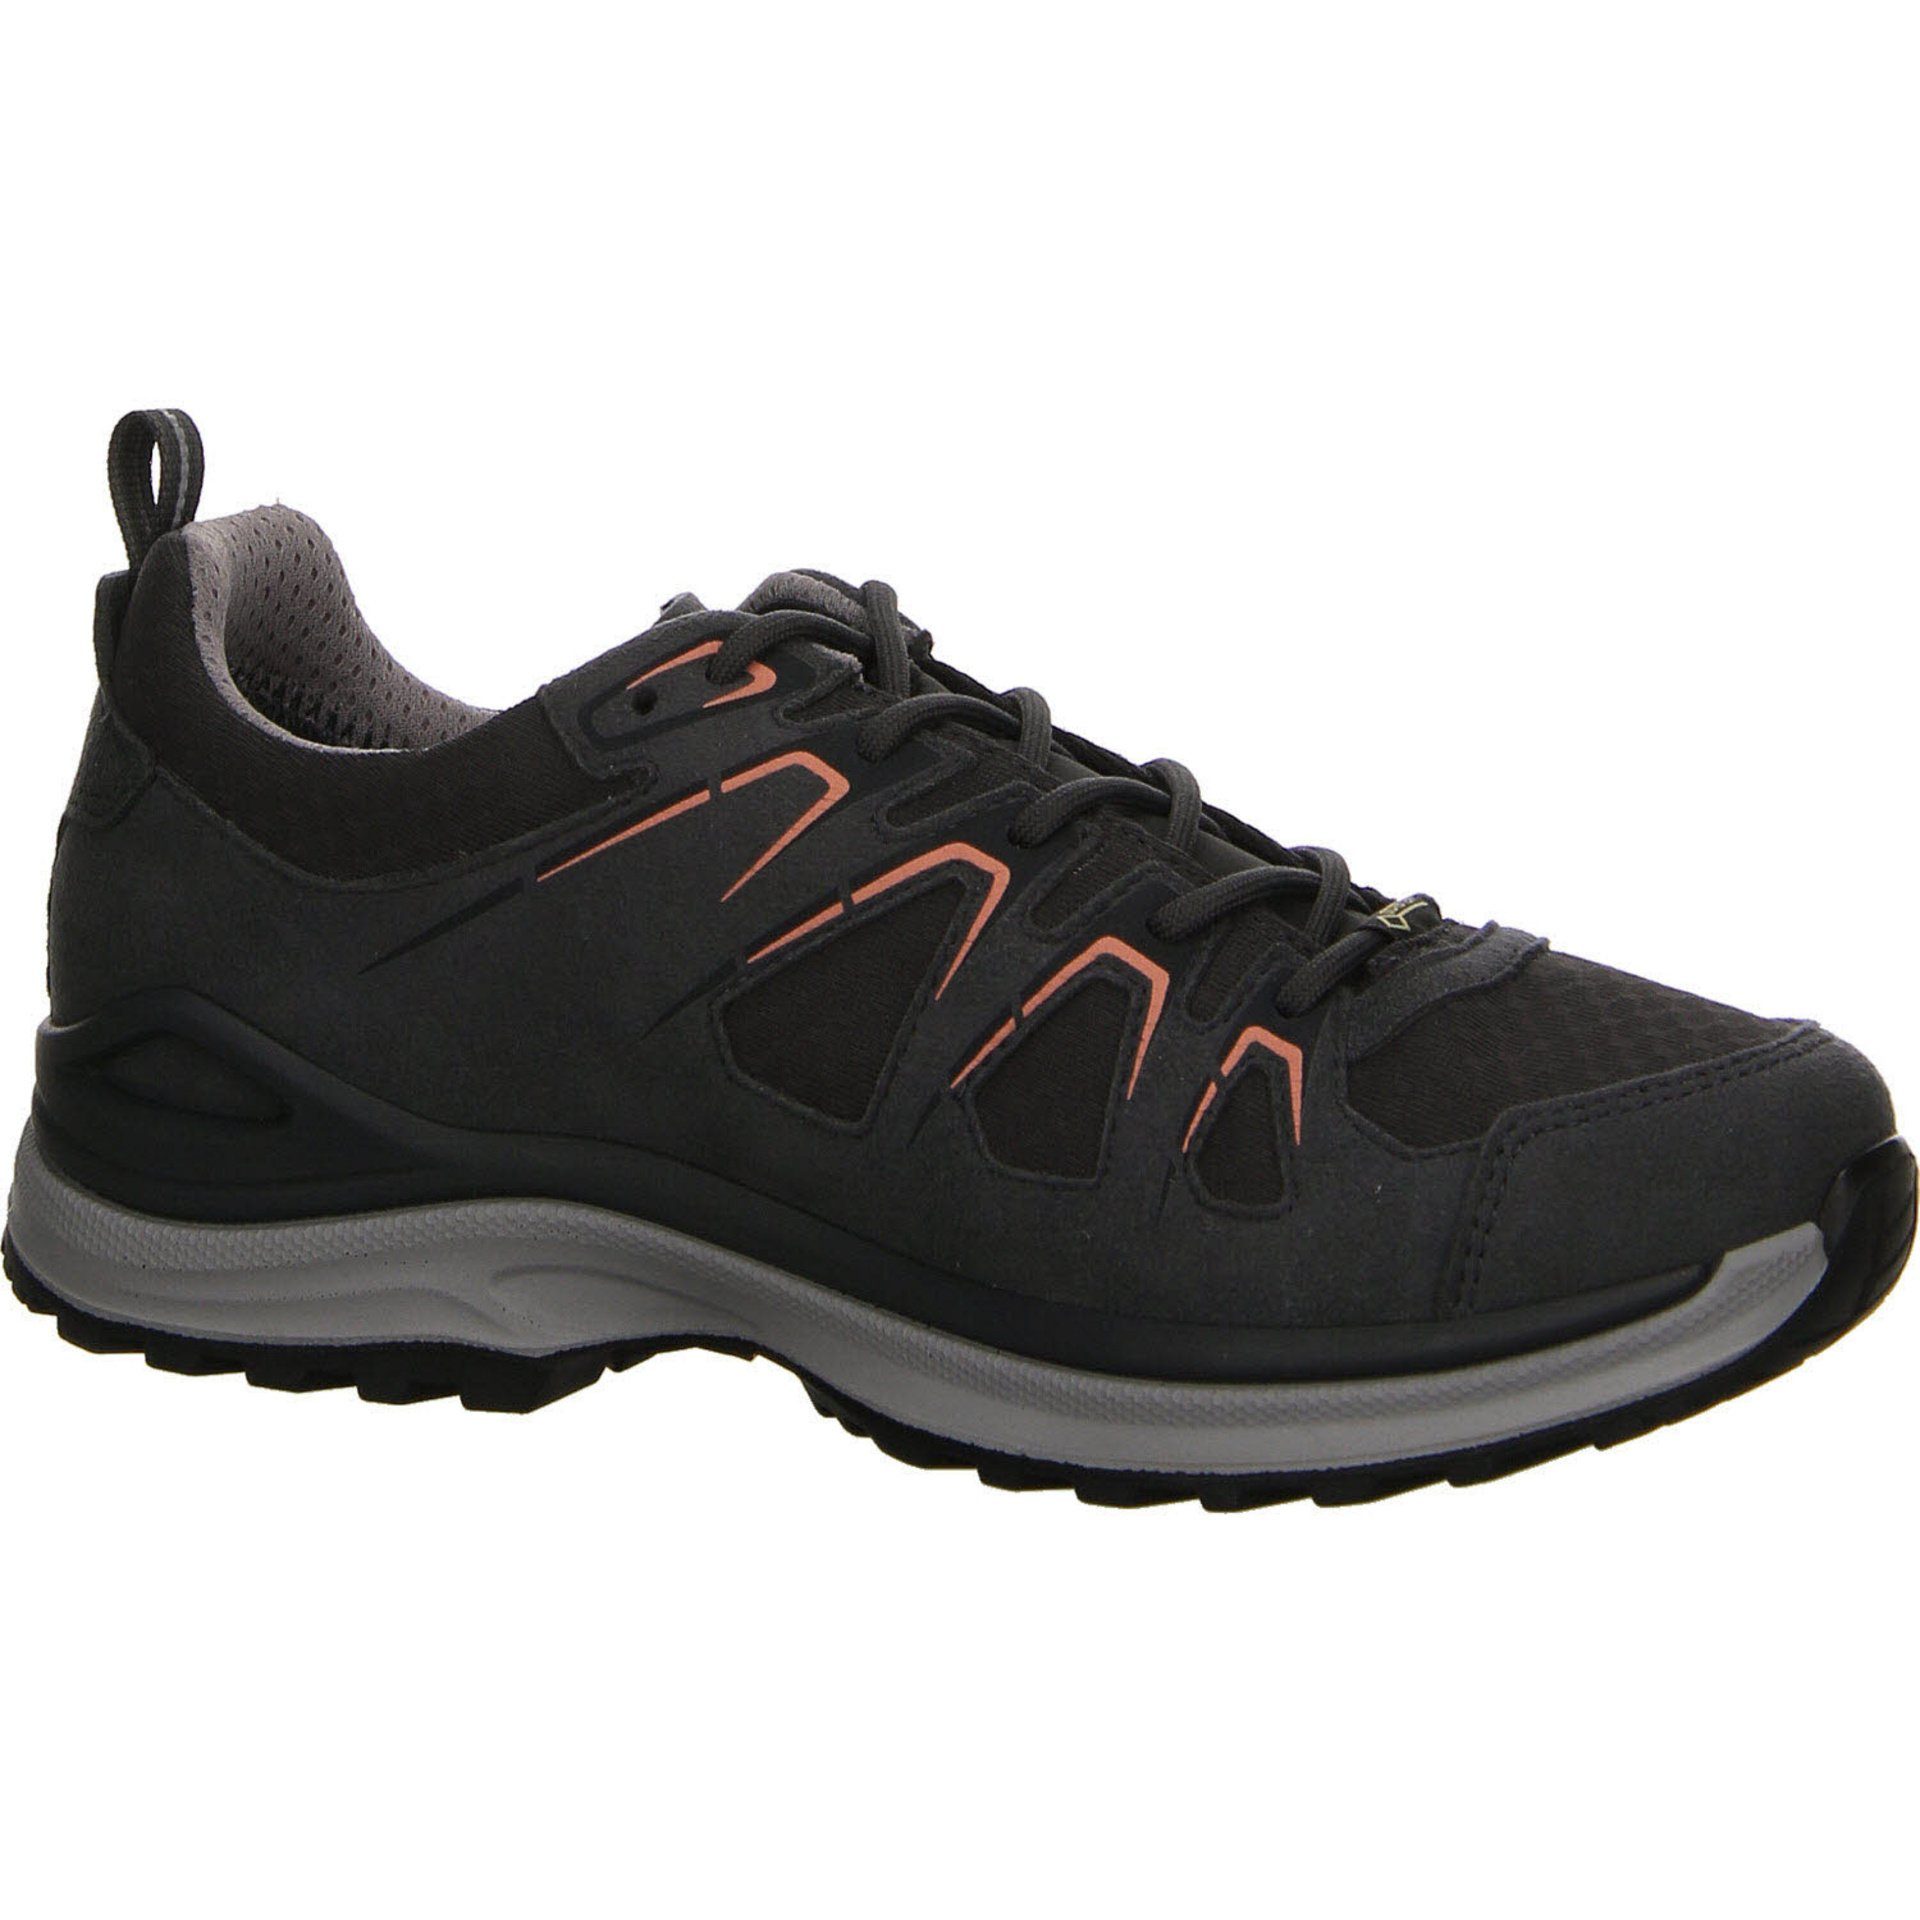 Lowa Damen Schuhe Outdoor Outdoorschuh Outdoorschuh GTX Leder-/Textilkombination Lo Innox asphalt/lachs Evo